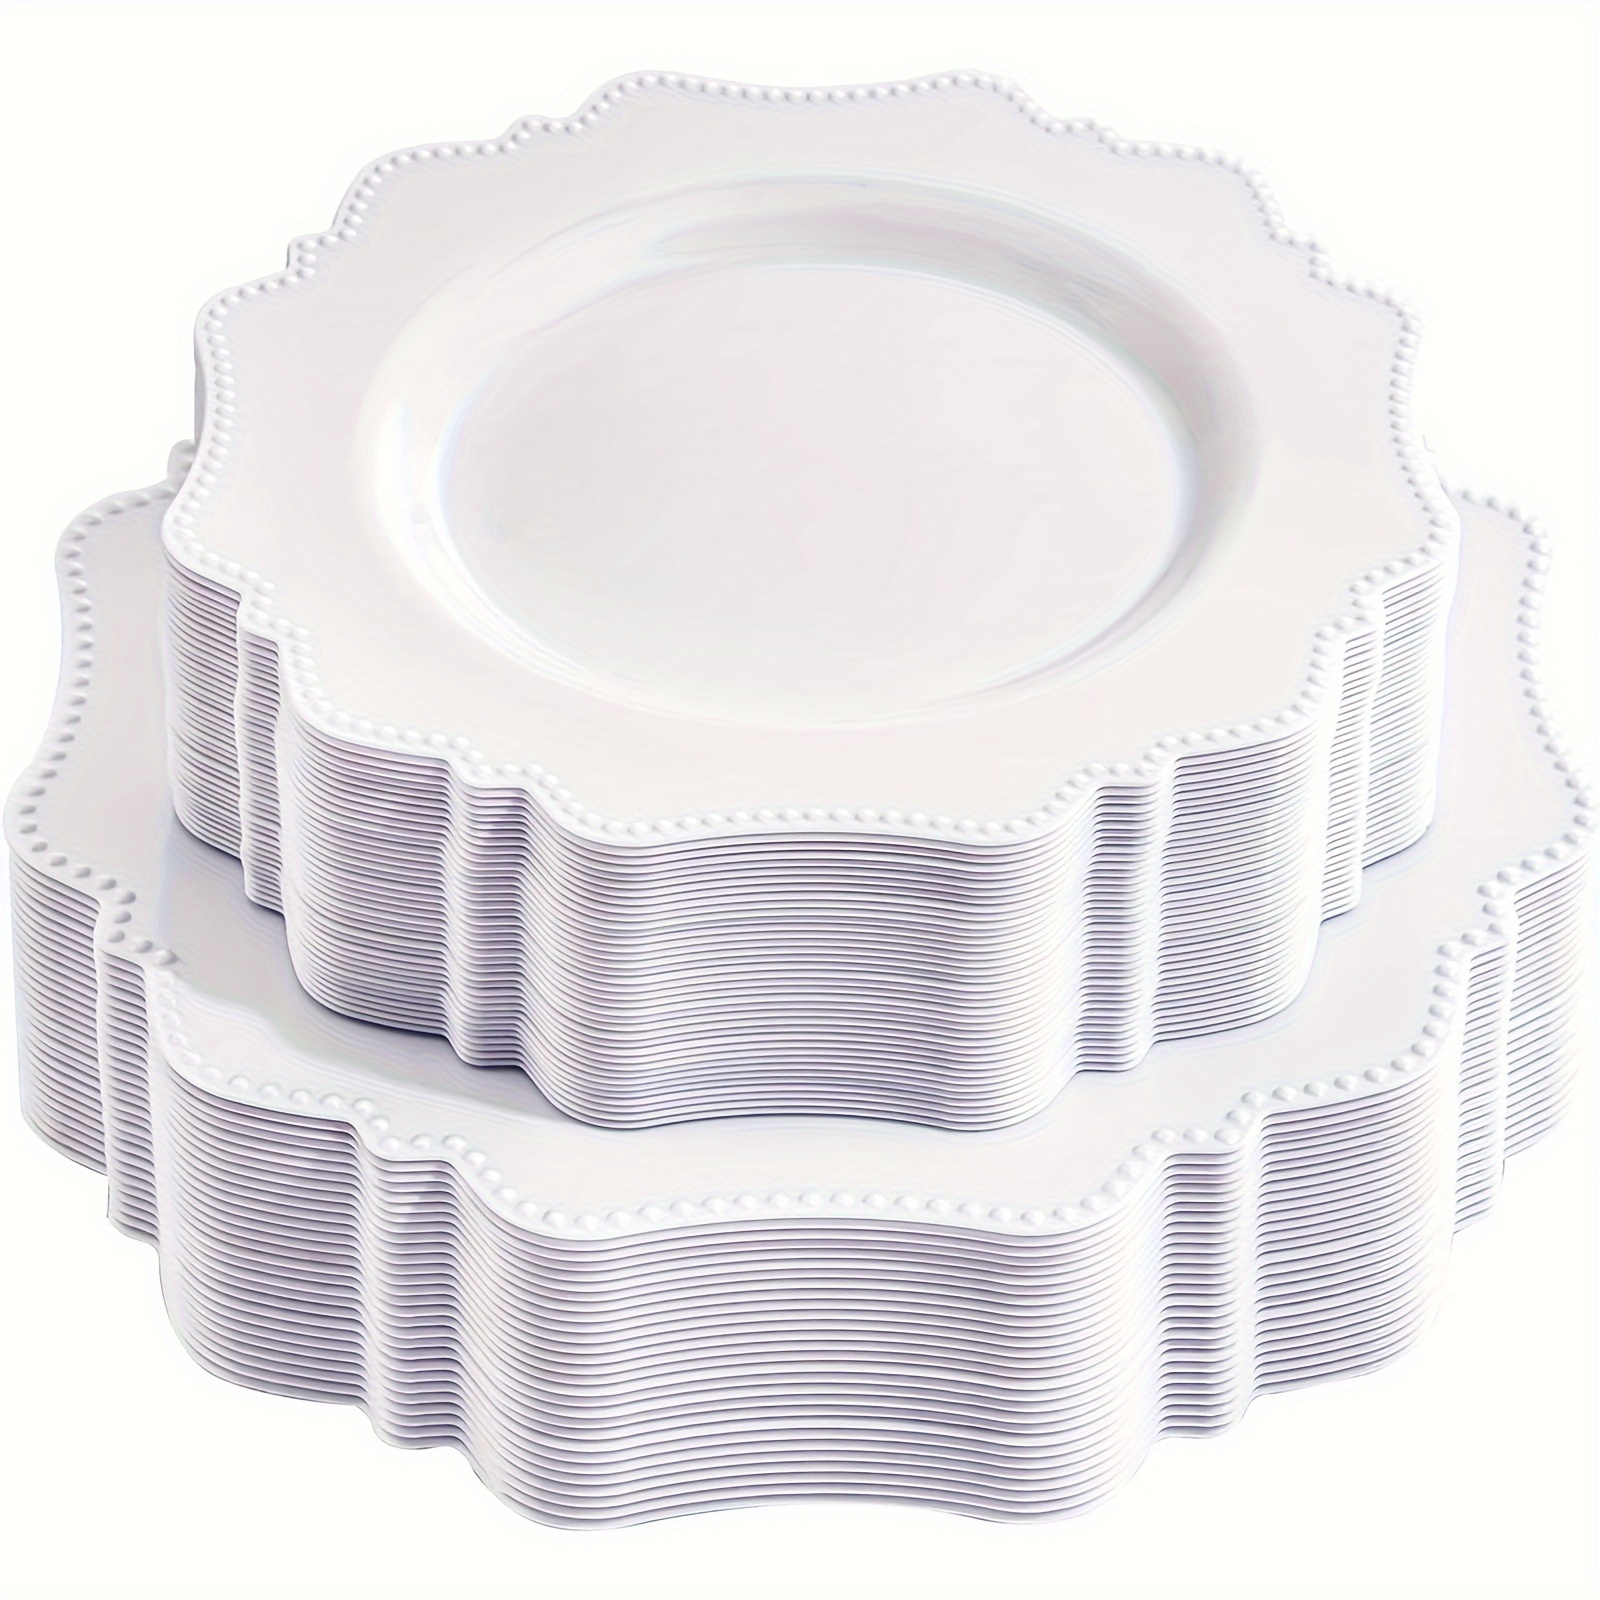 Platos de plástico desechables blancos de 8, platos de ensalada redondos,  platos de postre, platos reutilizables resistentes, paquete de 10 / diseño  de mármol dorado -  México